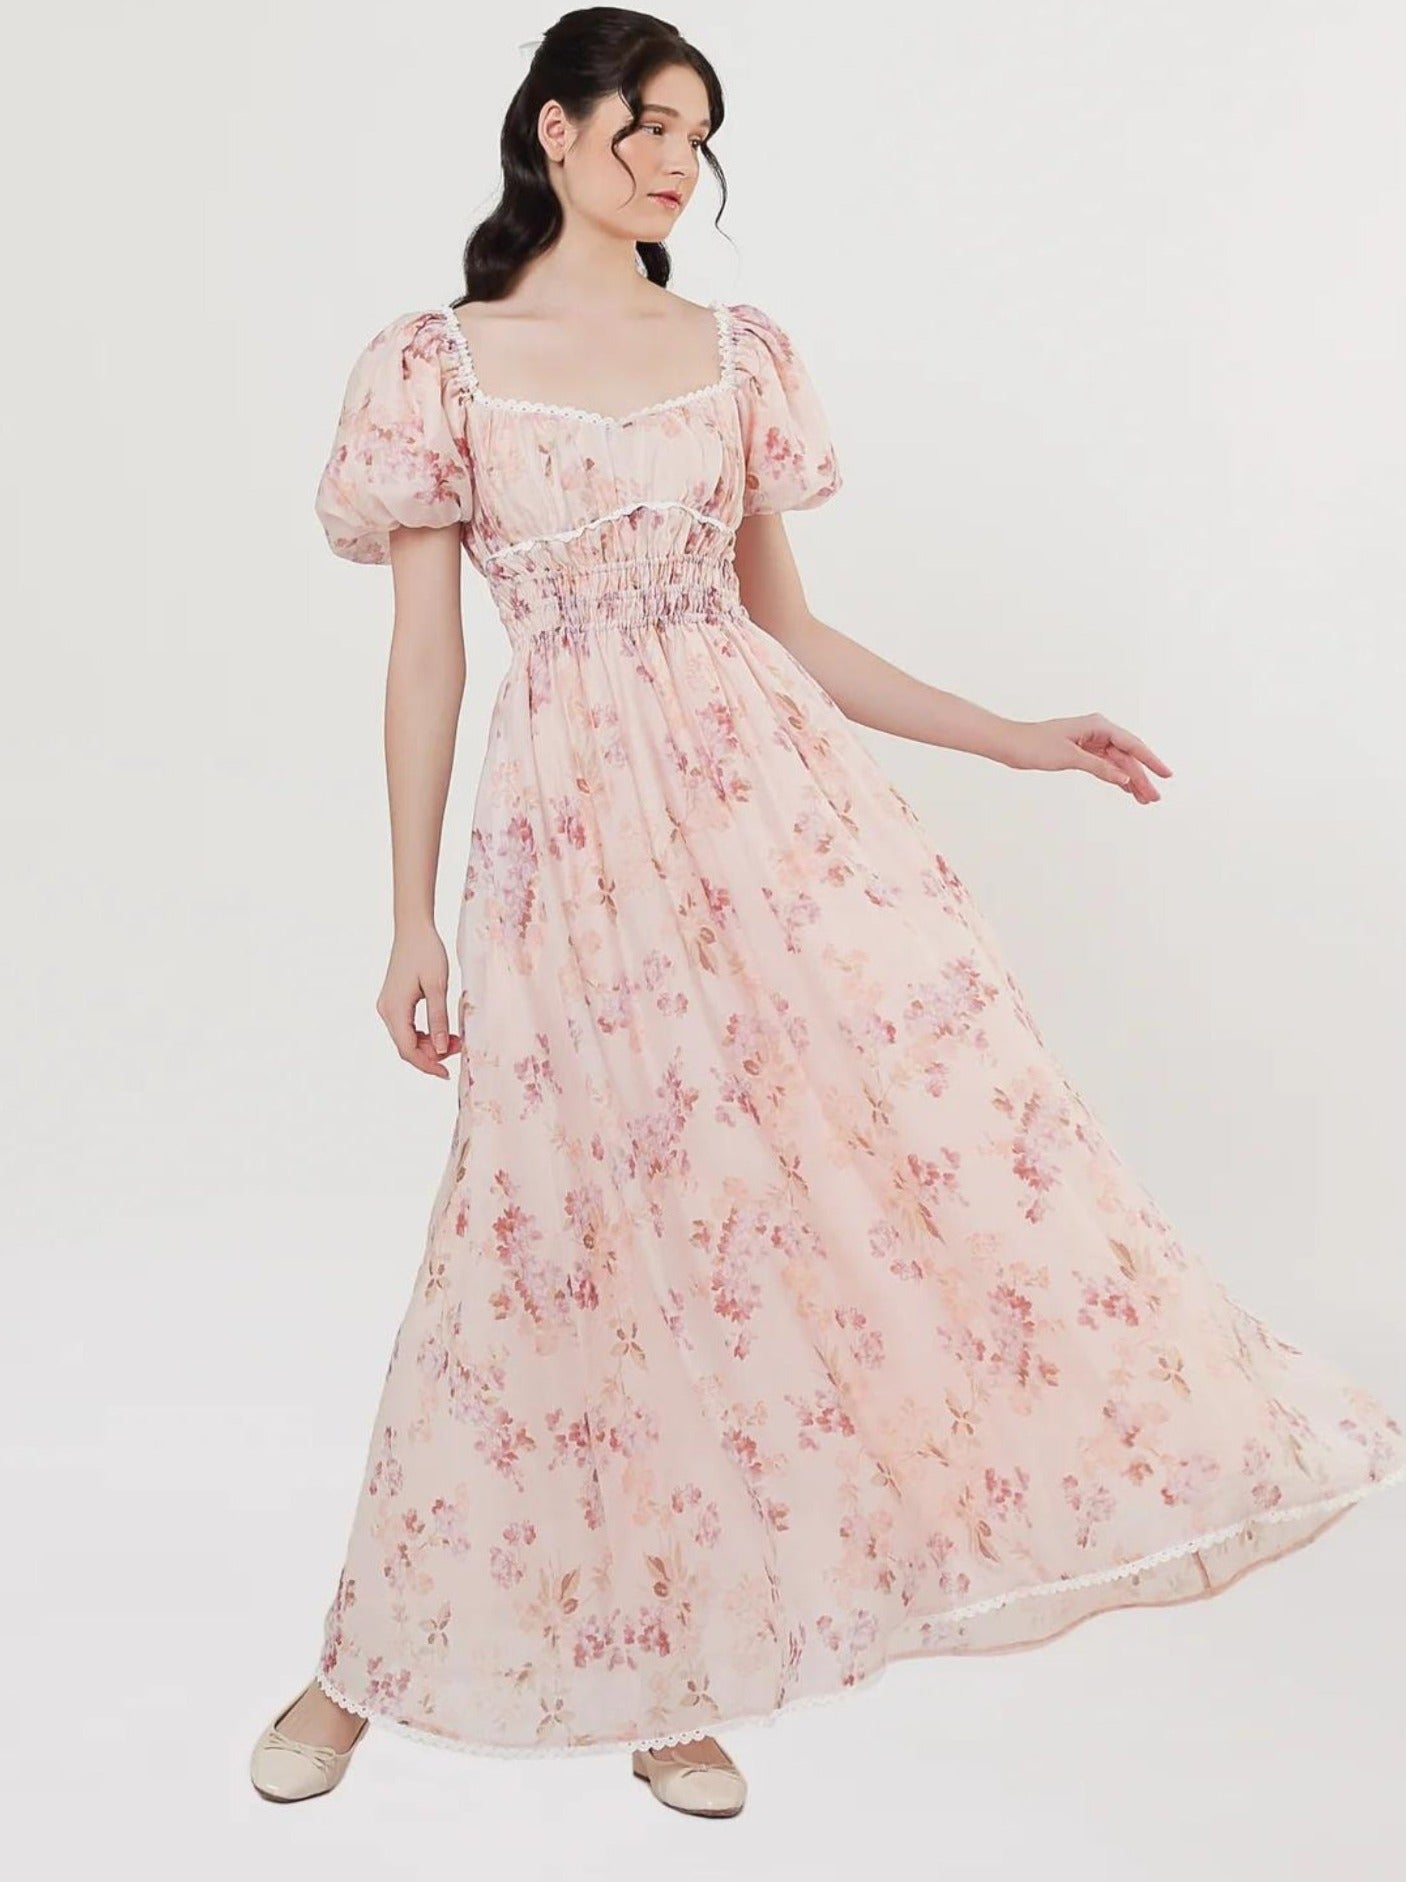 Isabella Dress in Floral Pink (2 LEFT)